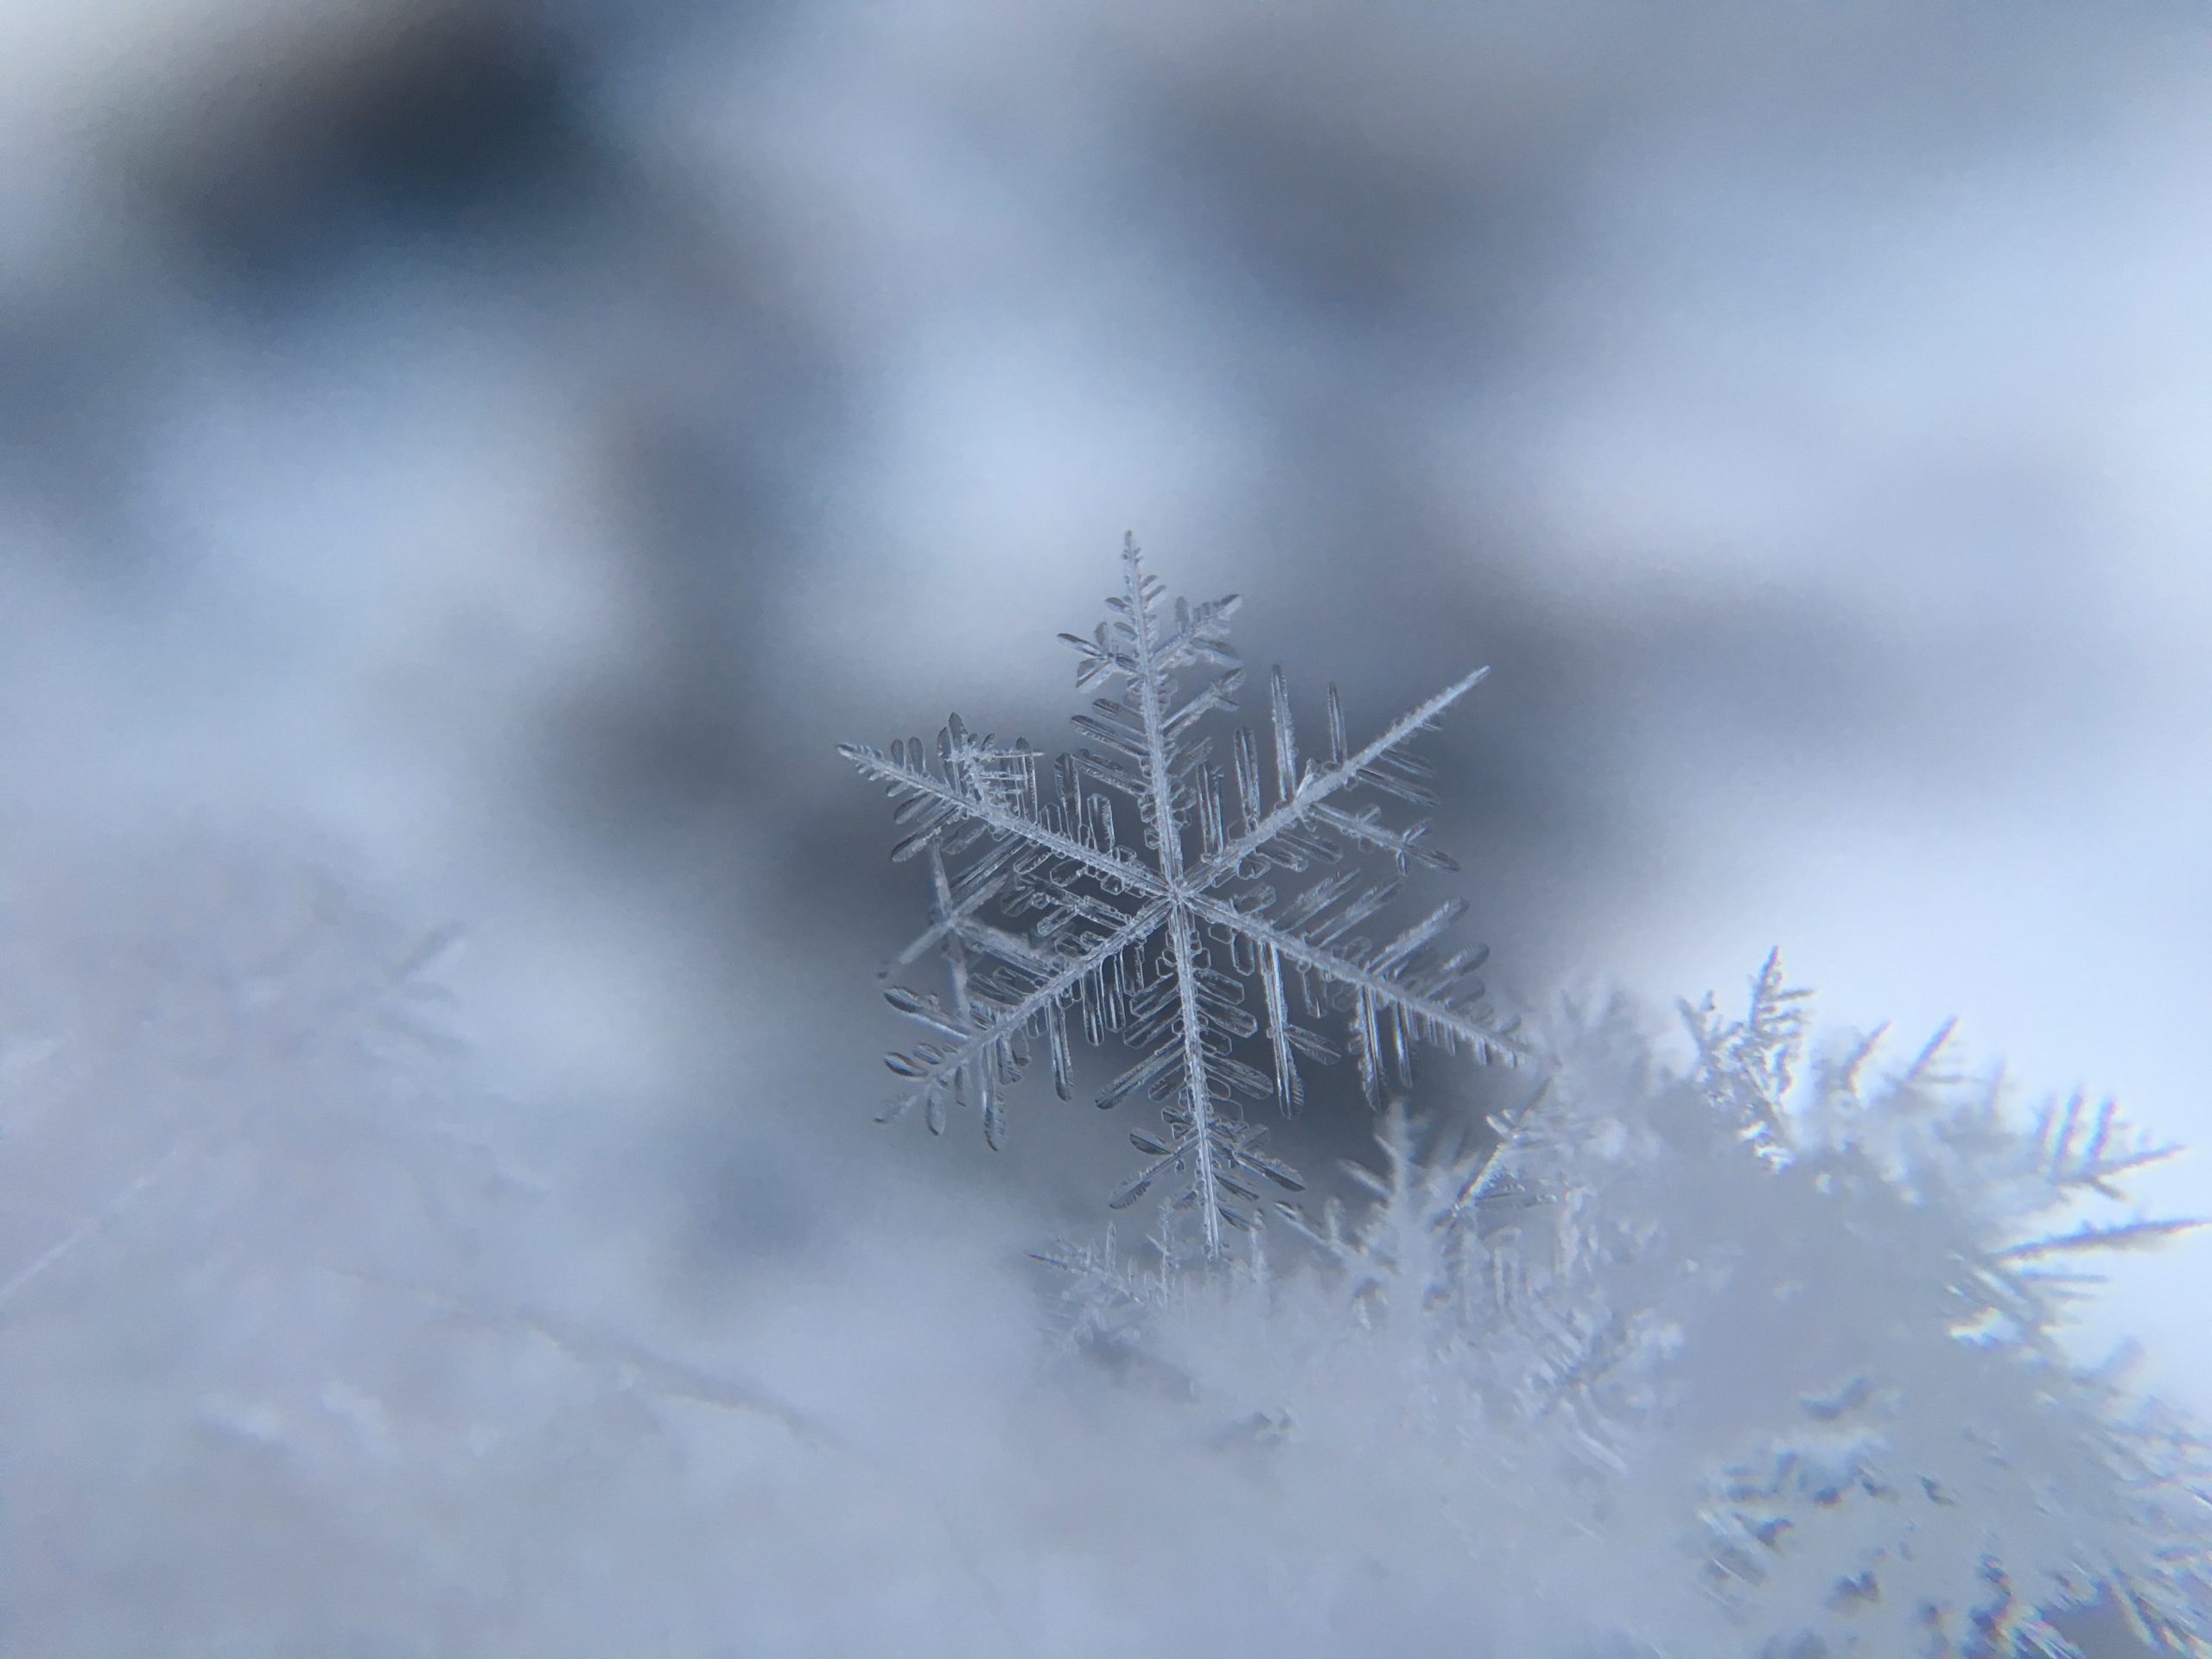  Sanjati snijeg: 10 značenja koja se NAJVIŠE dešavaju u SNOVI